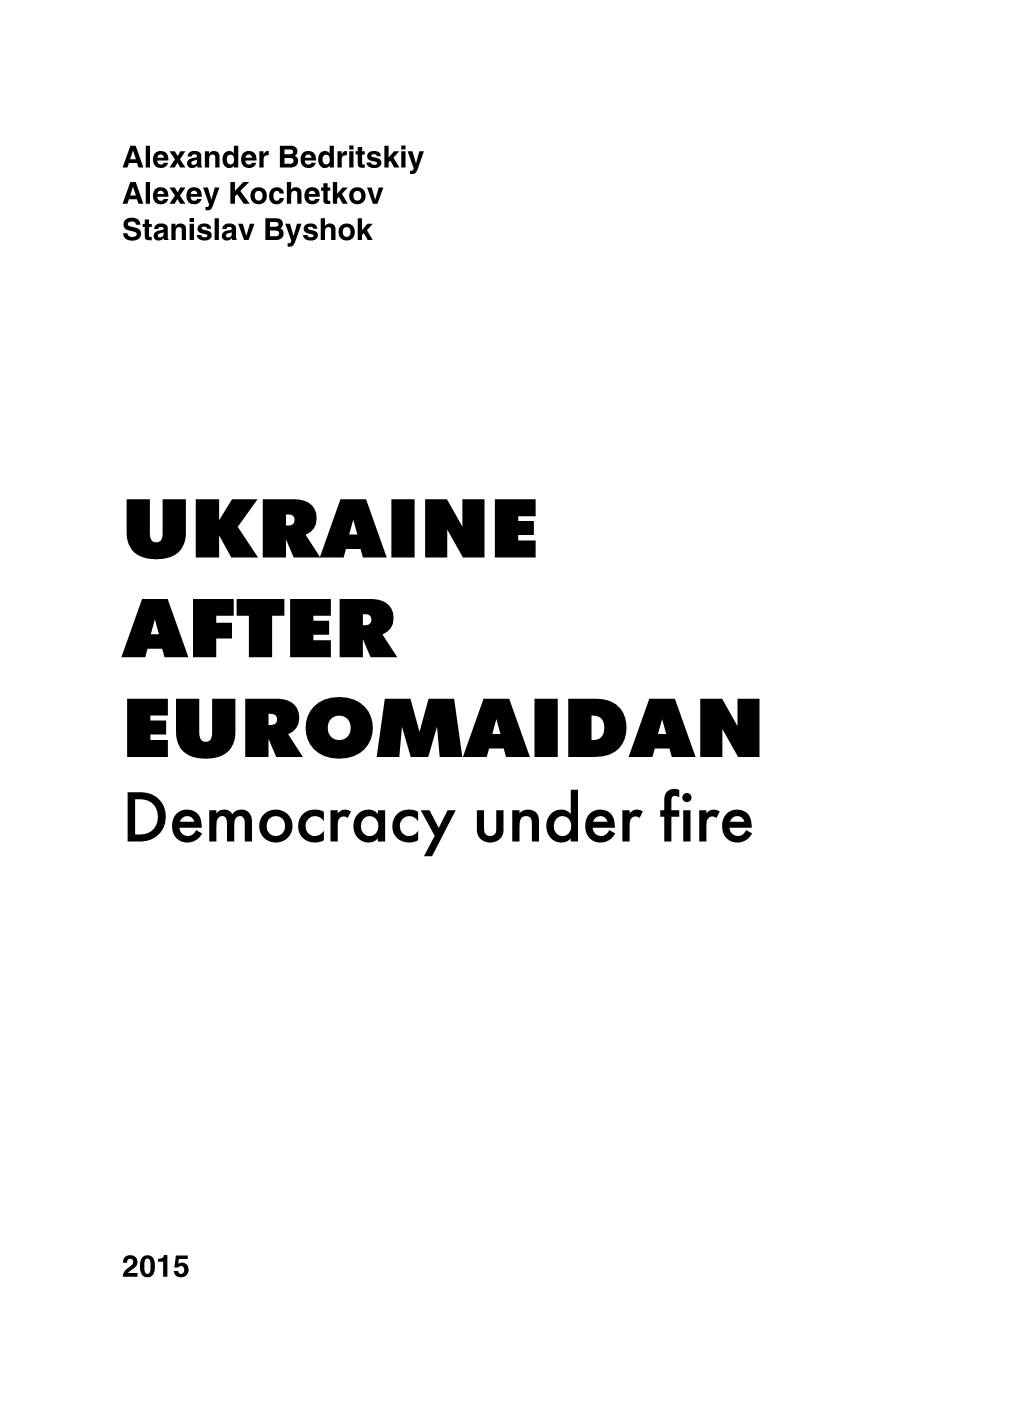 Ukraine After Euromaidan: Democracy Under Fire